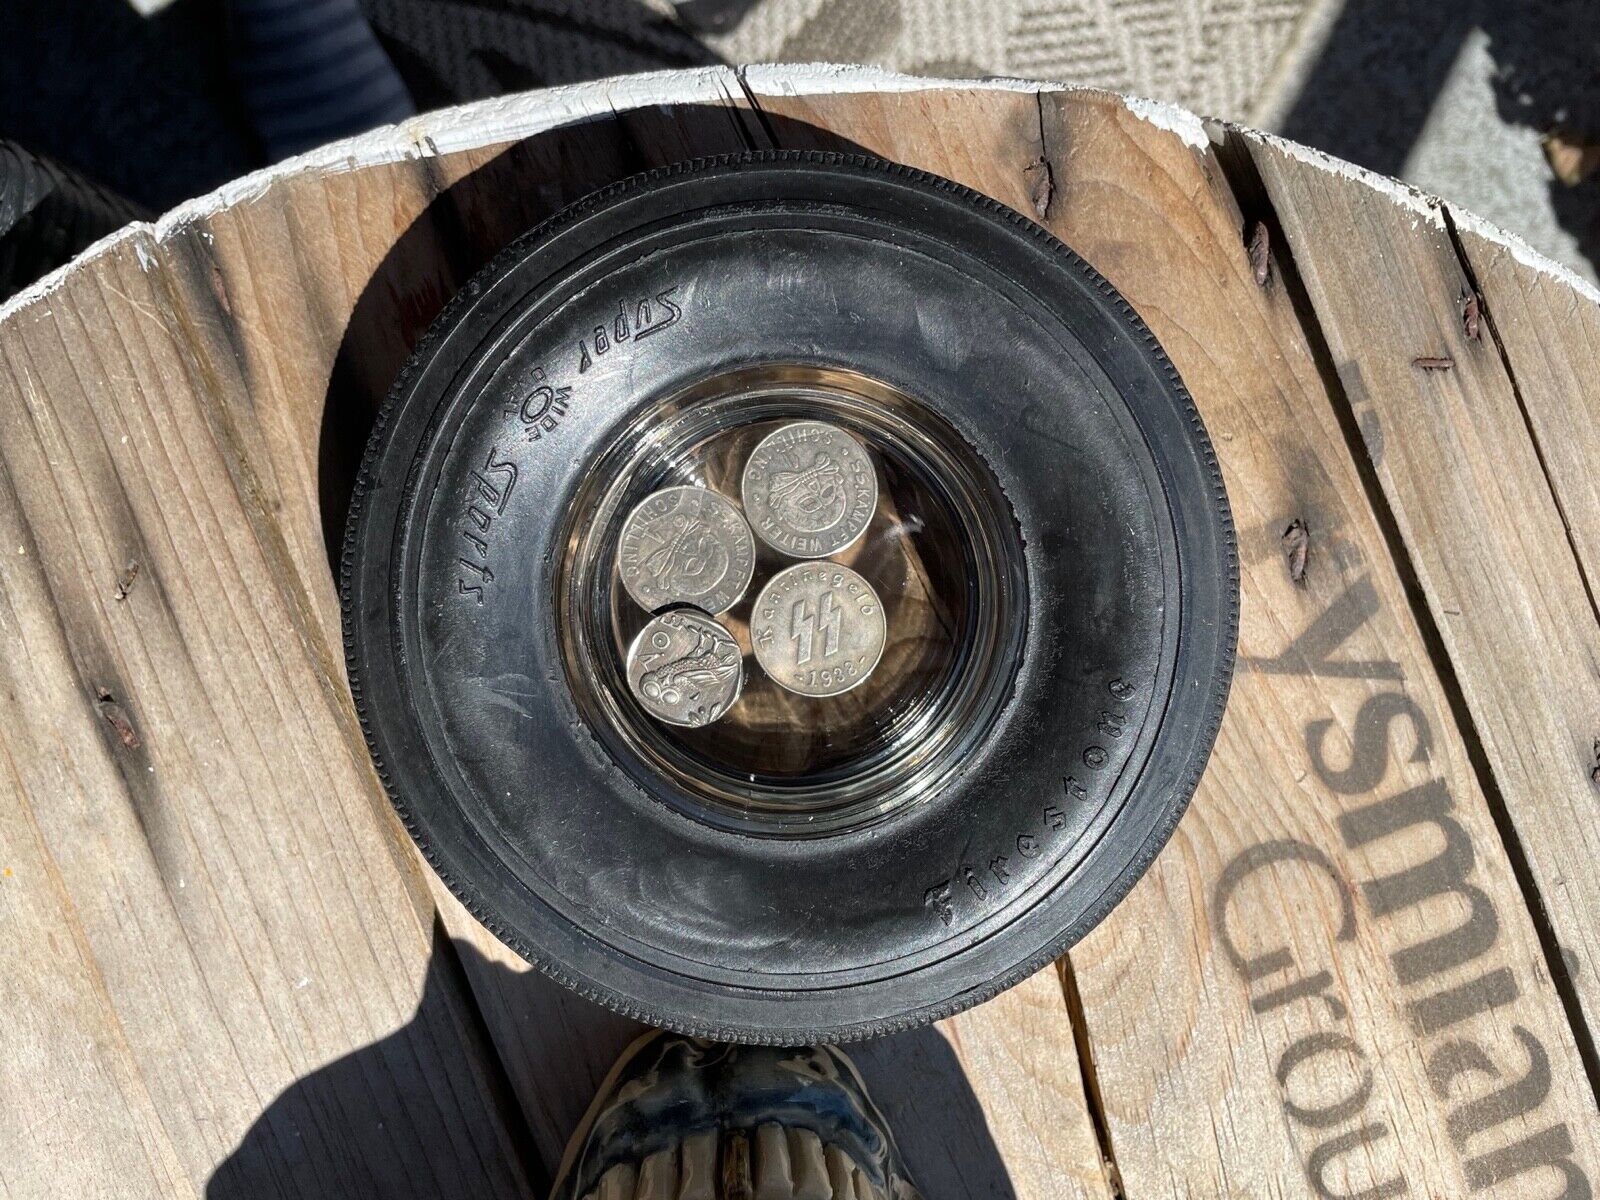 FireStone tire ashtray / Coin tray. Rare Wide Oval Super Sports model